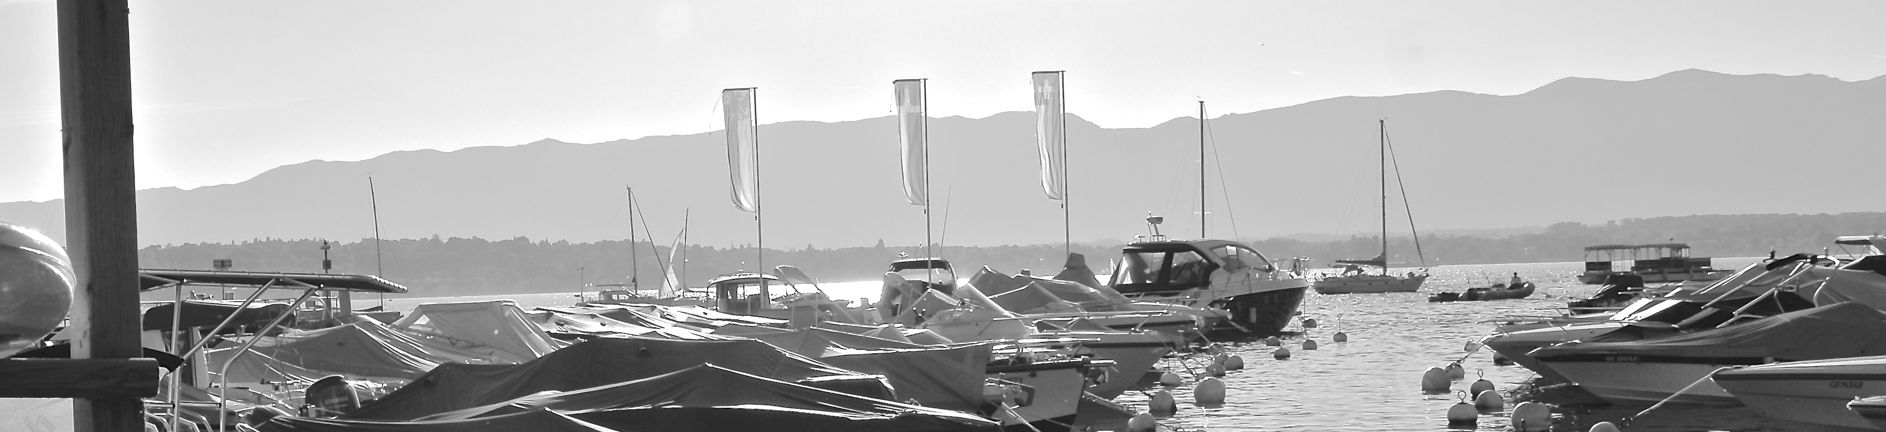 Infos Léman - bateau Genève : carte des port, conseil d'entretient, réglementations de la navigation sur le lac Léman